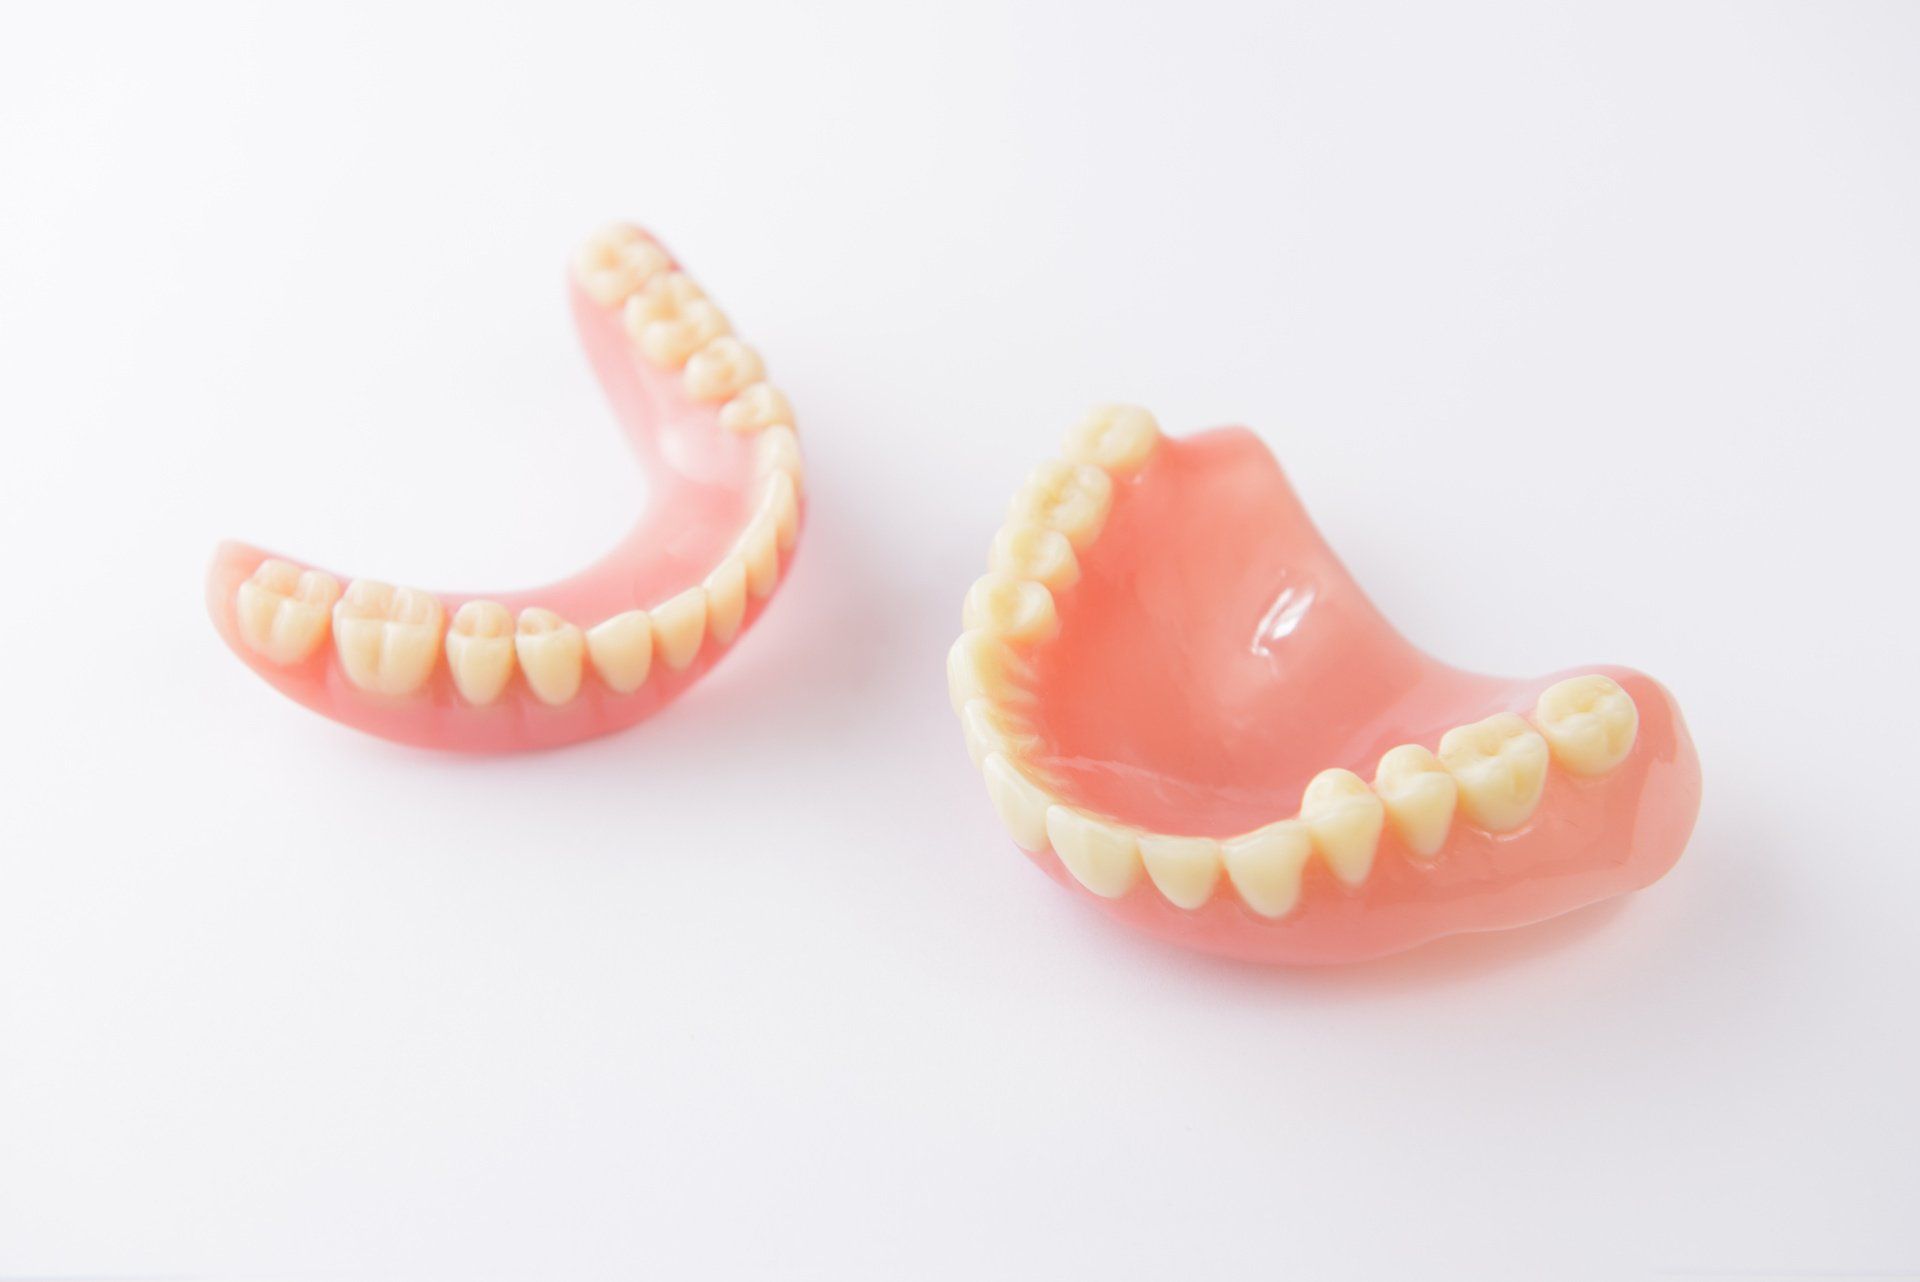 Standard dentures